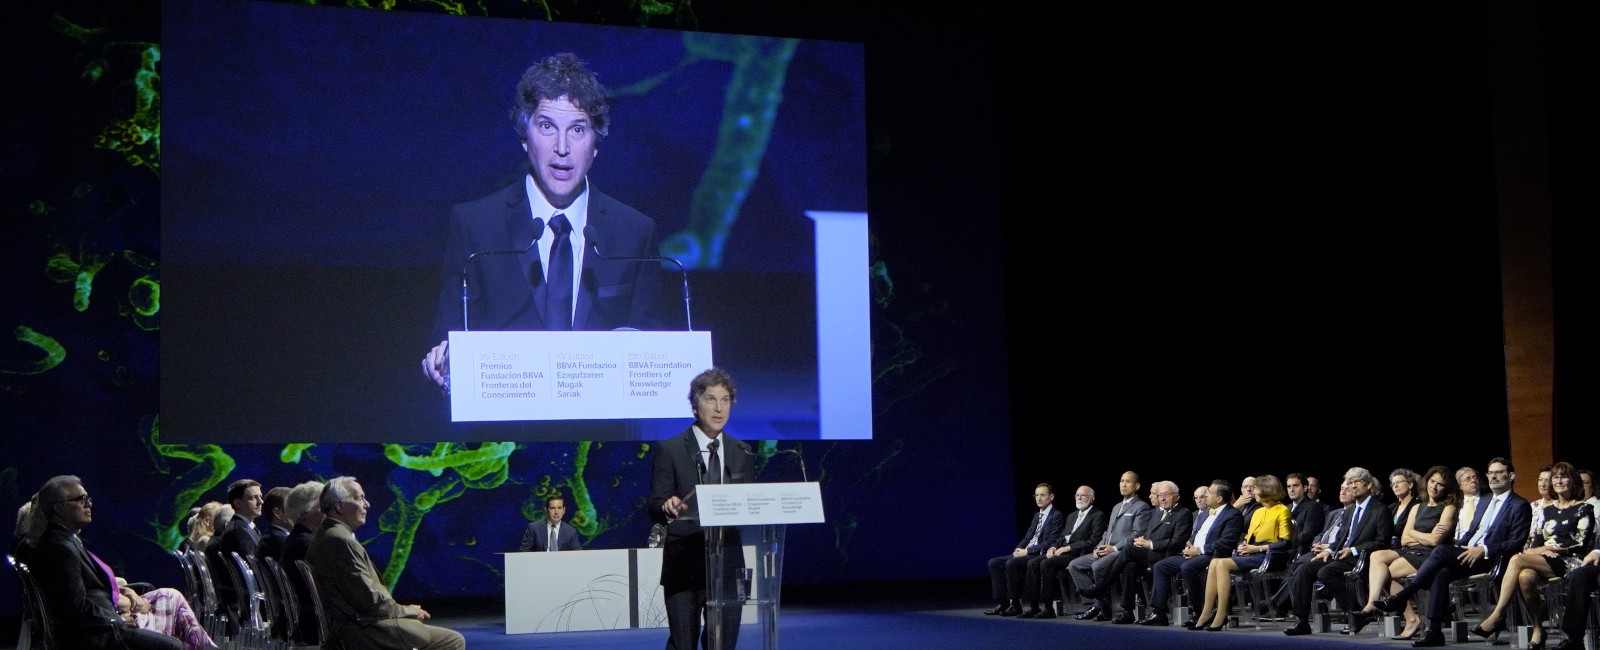 David Baker pronunciando su discurso en la ceremonia de los XV Premios Fronteras del Conocimiento